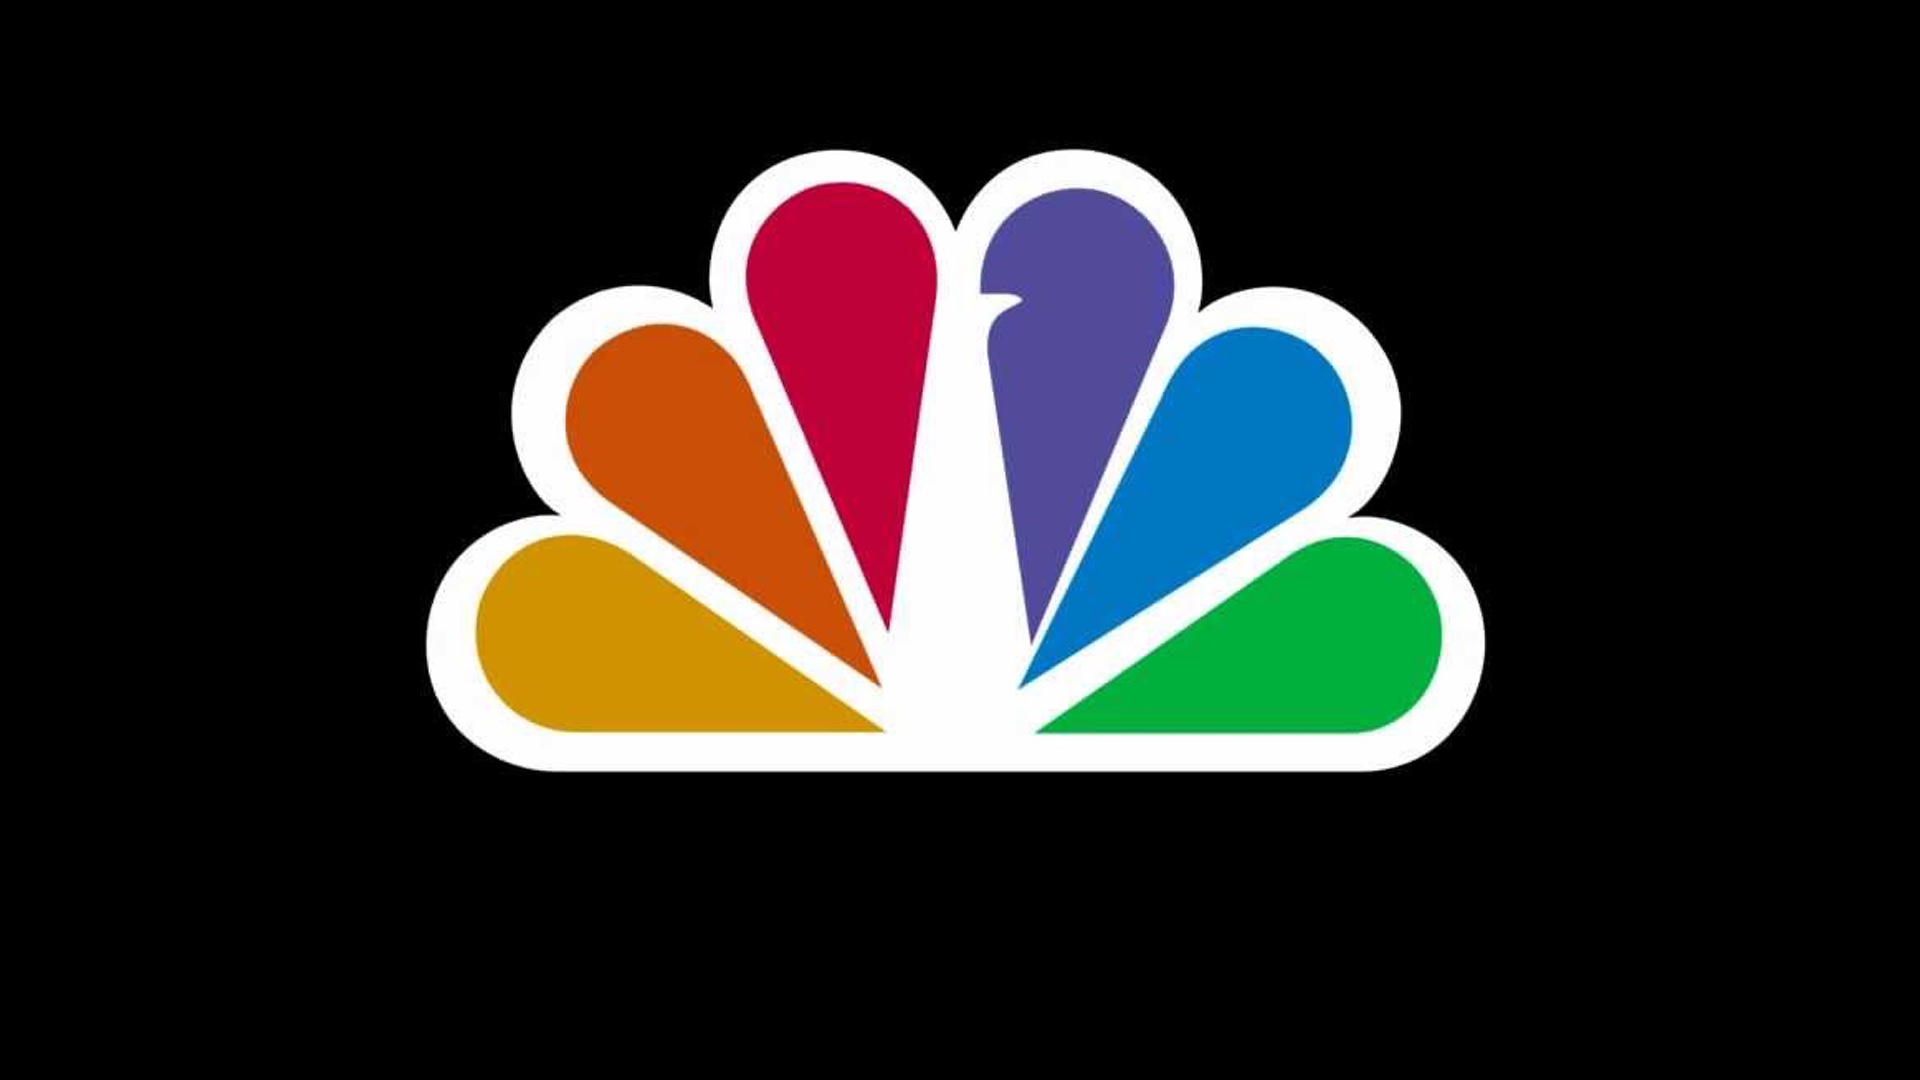 Cnbc com. Логотип NBC. NBC канал. Логотип телекомпании NBC. НБС логотип.